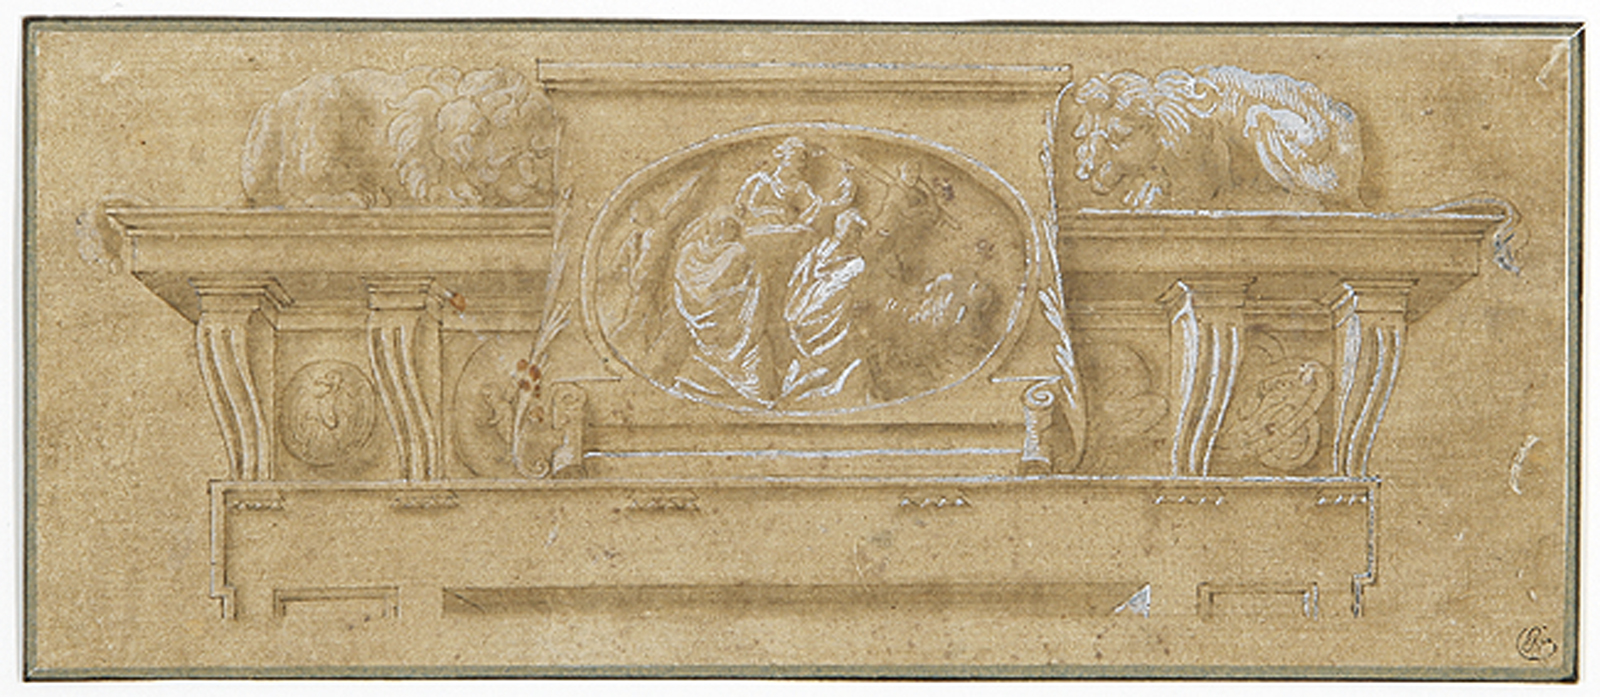 Relieftafel mit figürlicher Szene, flankiert von zwei Löwen.